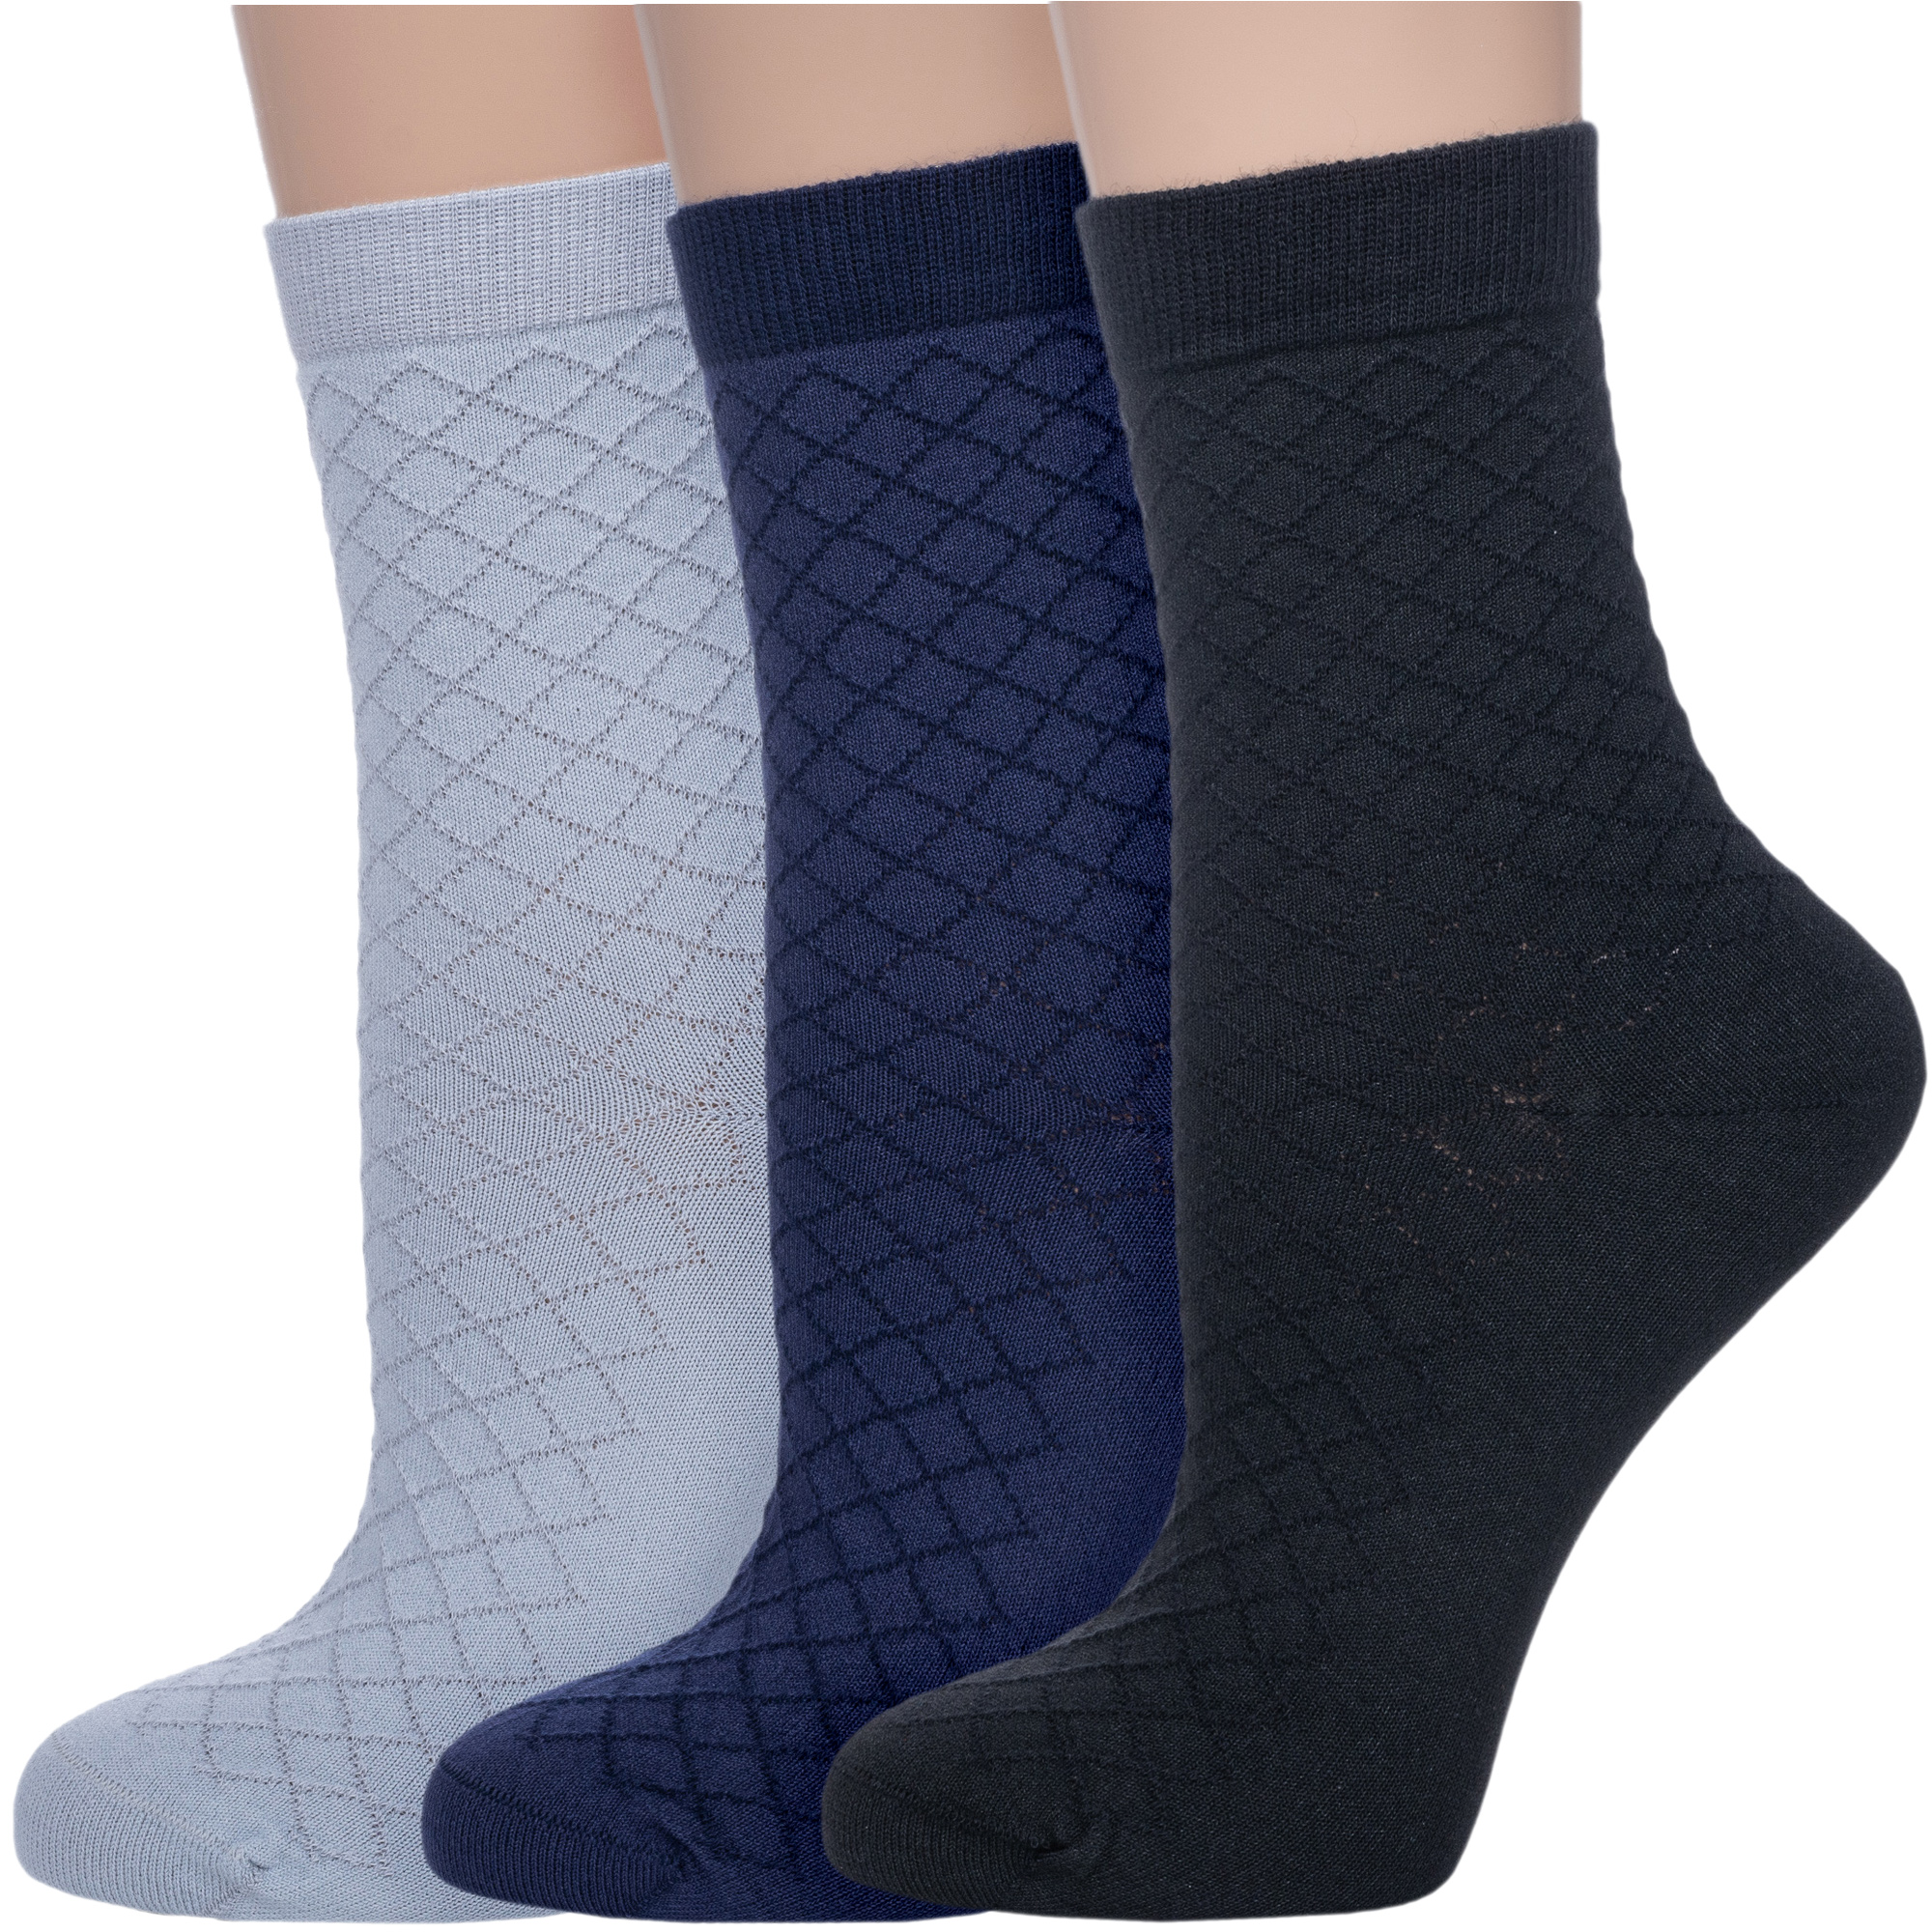 Комплект носков женских АКОС 3-LFW41 разноцветных 23-25